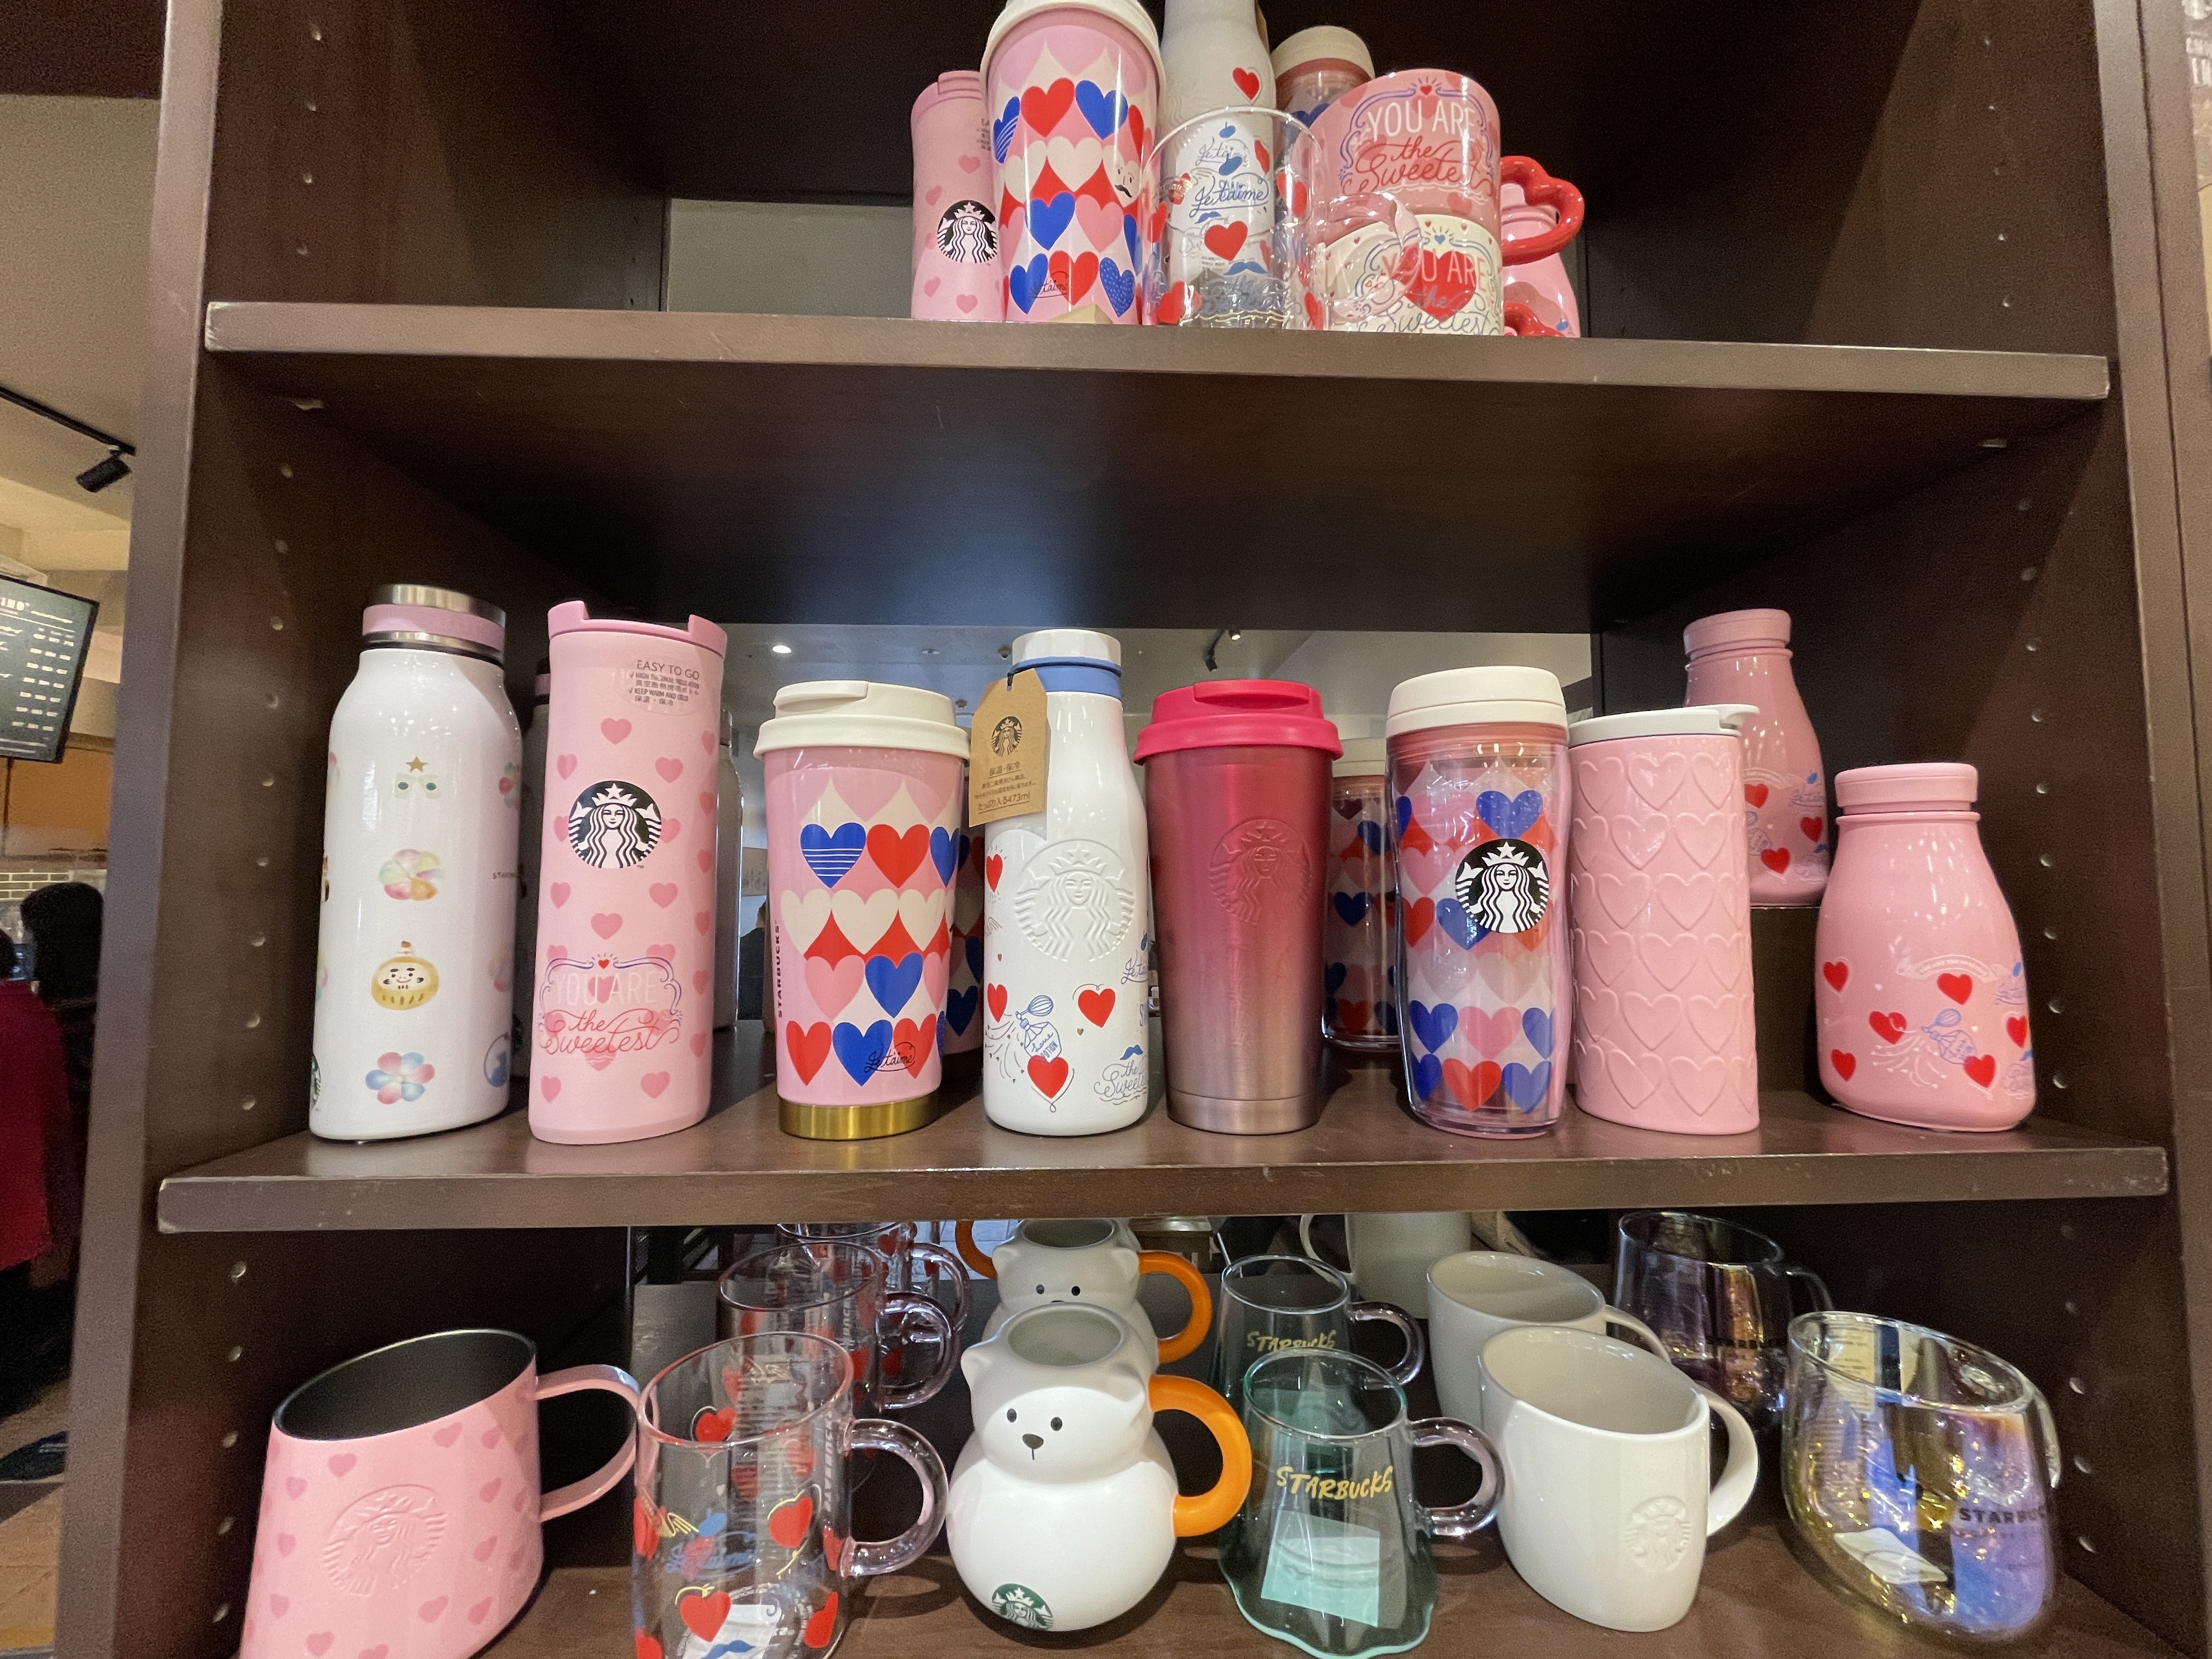 スターバックスコーヒーイオン北谷店でバレンタイングッズのタンブラーやマグカップが発売されてました 美ら浜つーしん 沖縄県北谷町の地域情報サイト